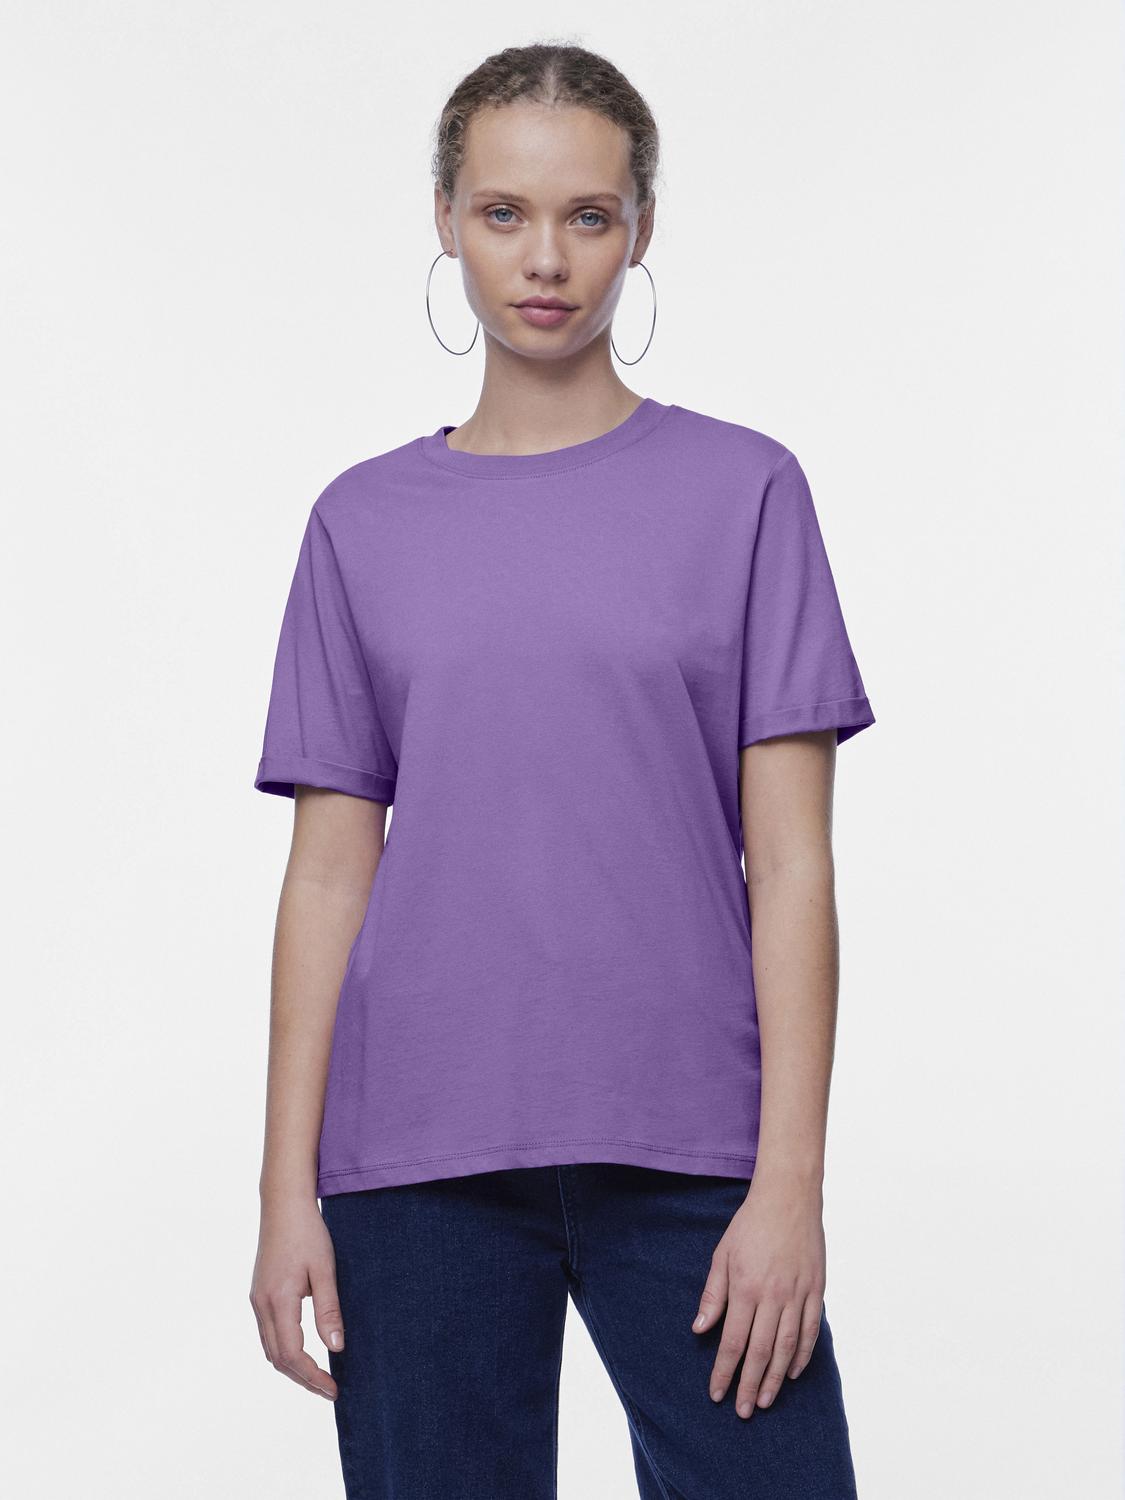 PCRIA T-Shirt - Bellflower